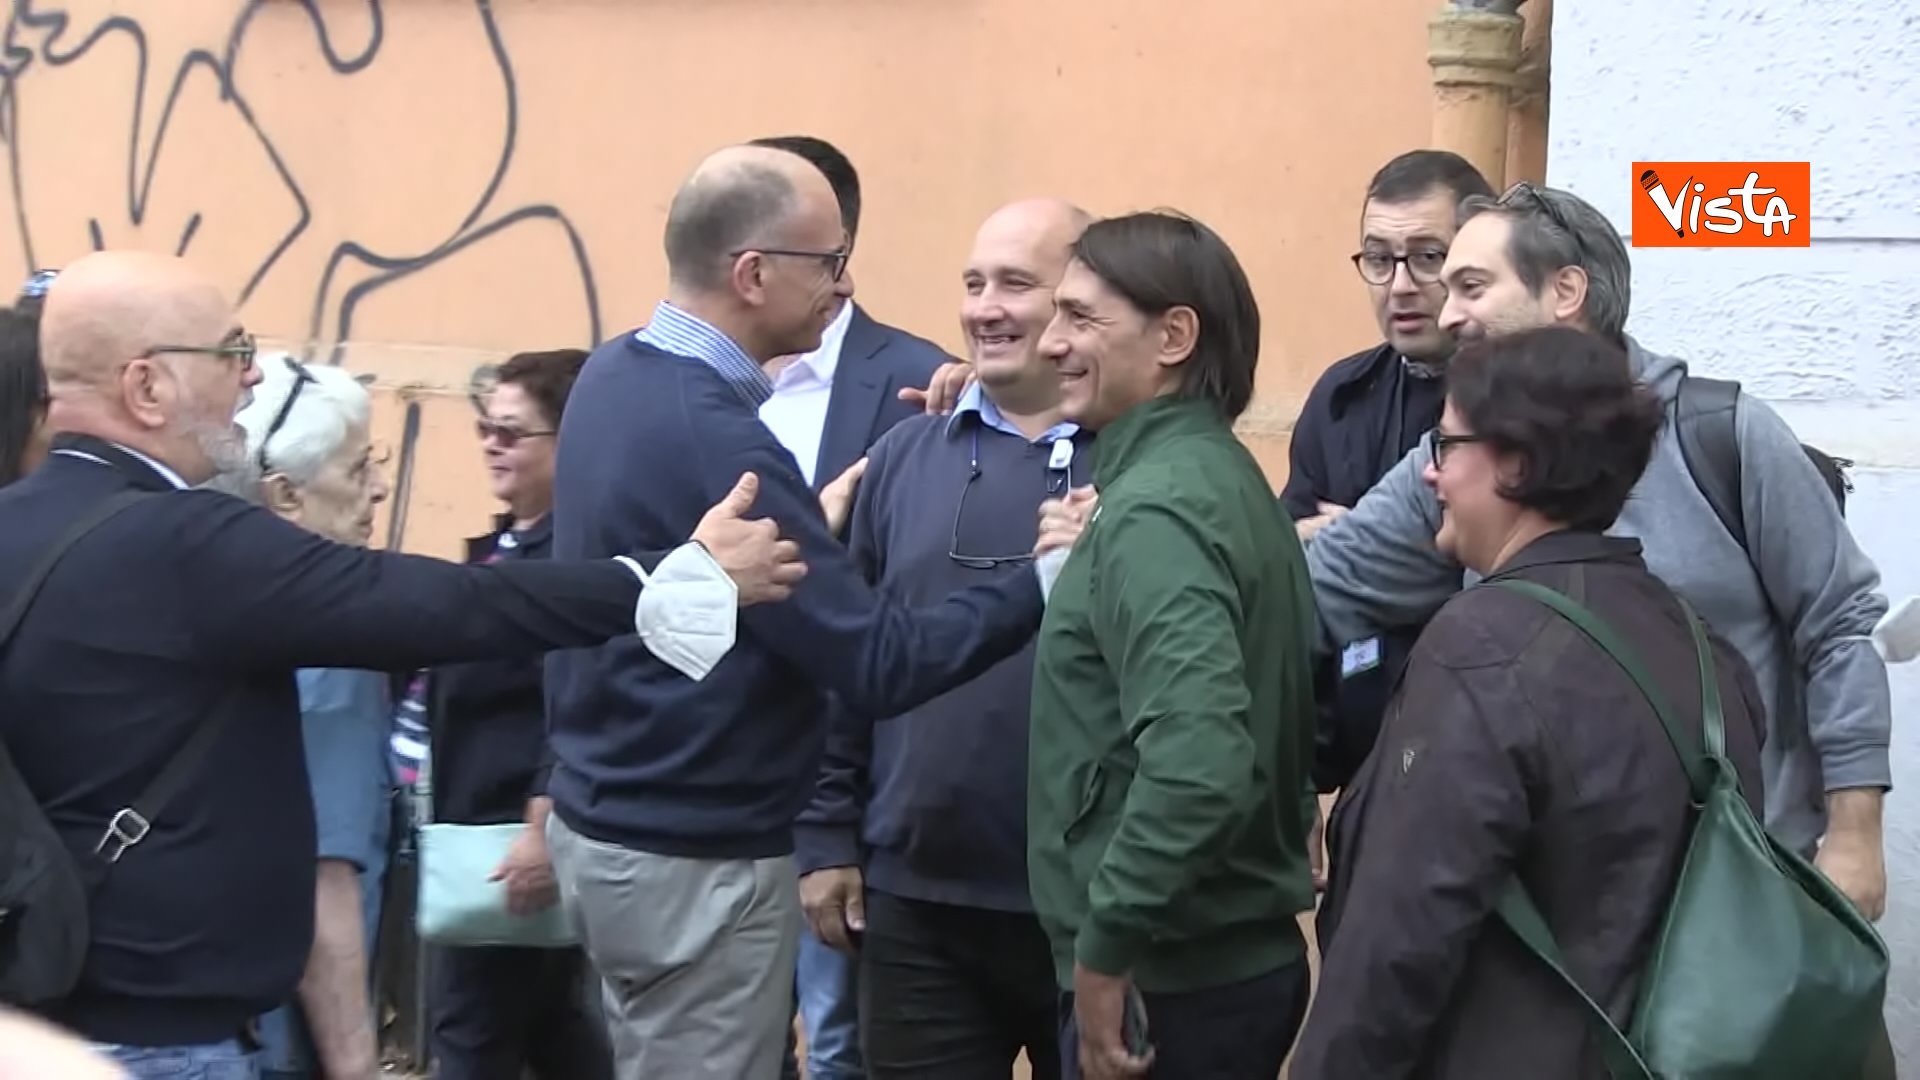 Elezioni 2022, Letta saluta e scatta foto con i militanti Pd davanti al seggio di Testaccio. La fotogallery